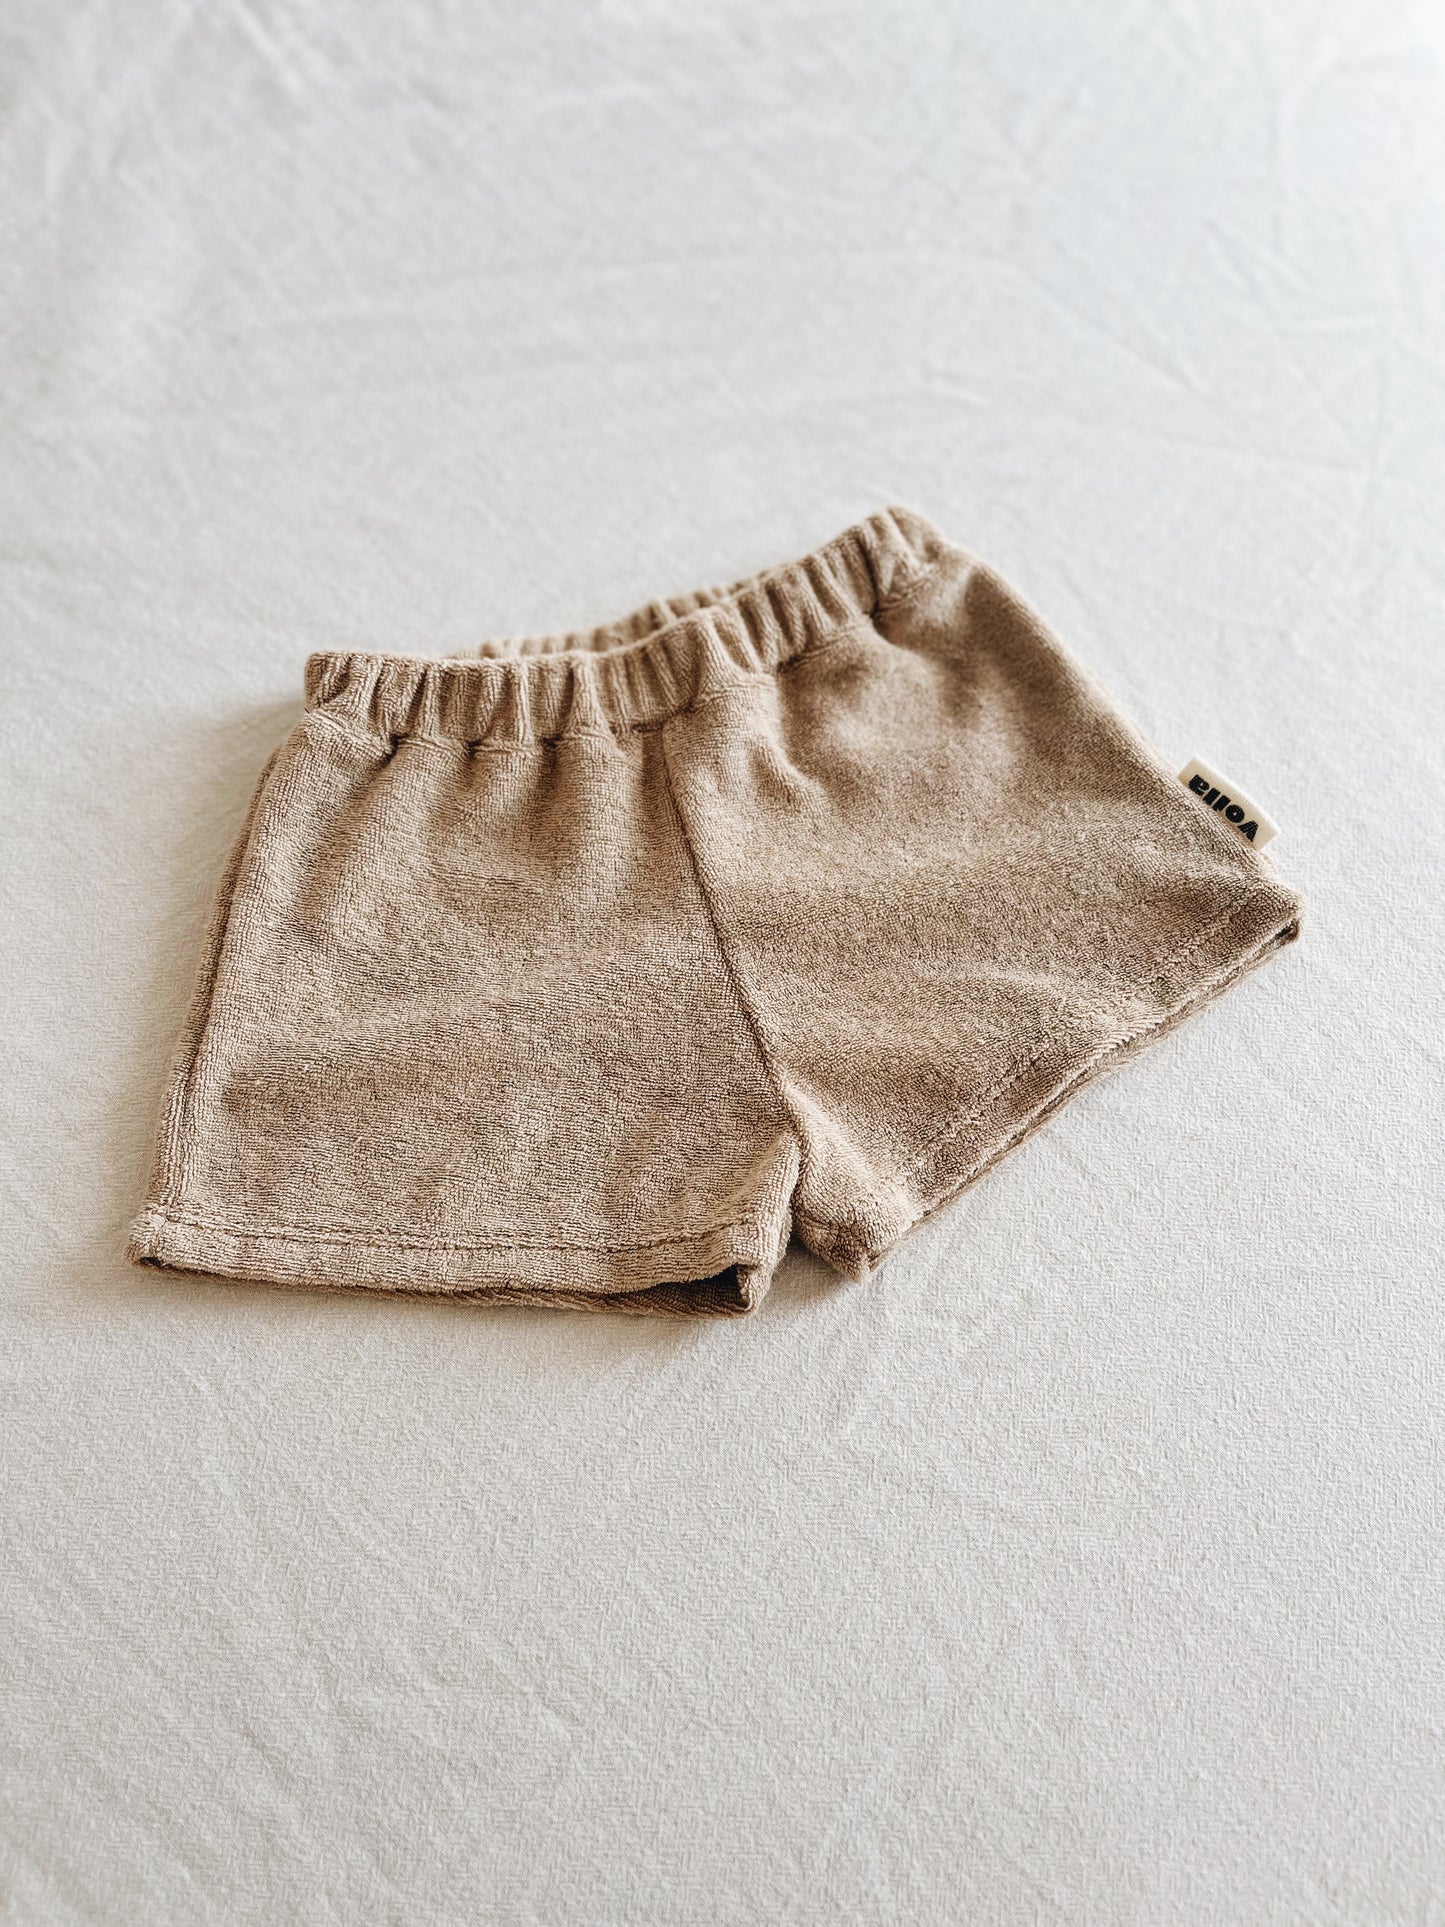 Hazelnut Sponge Shorts